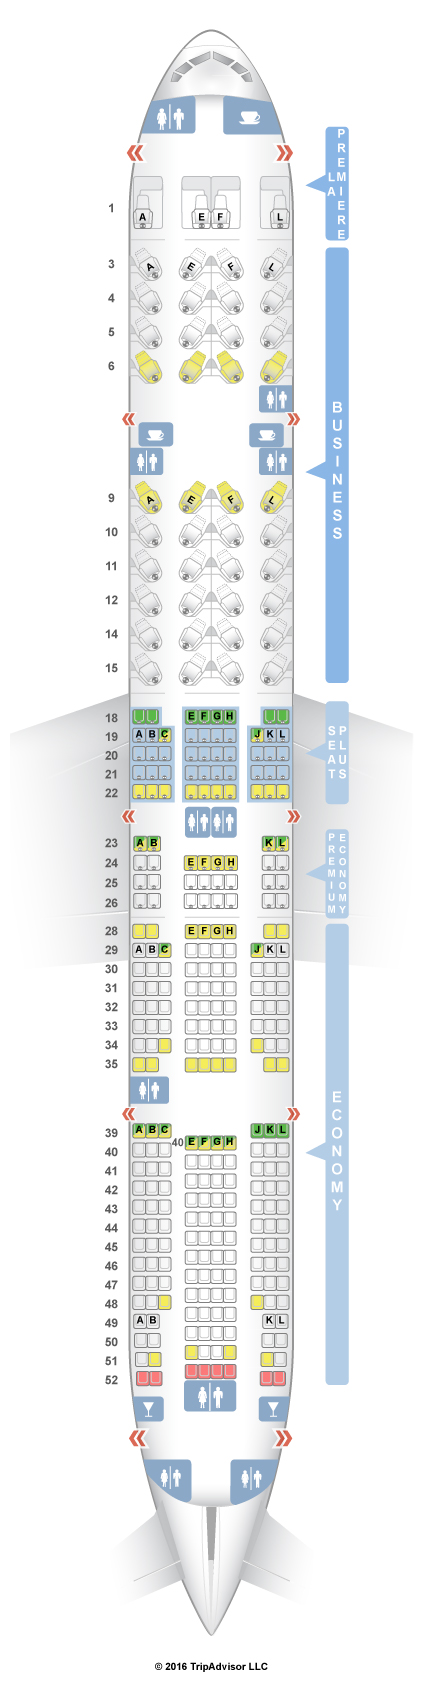 Plan Cabine 777 300er Air France